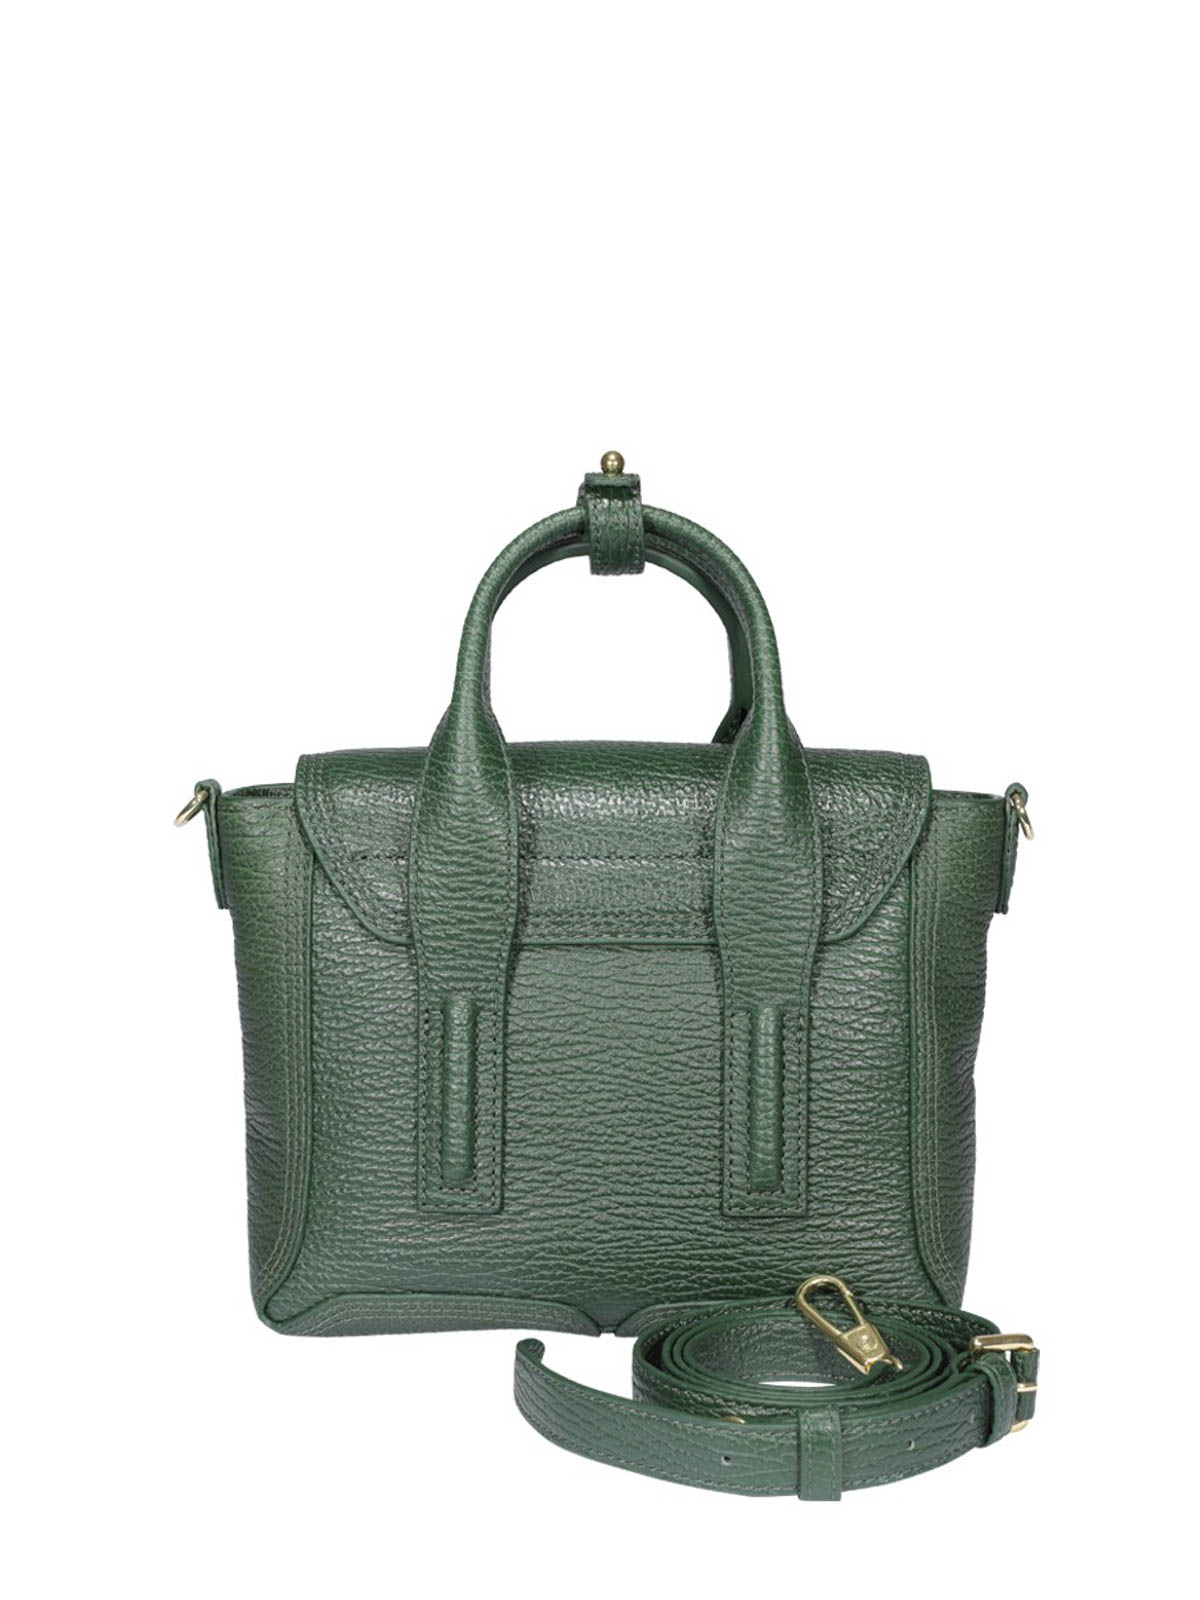 PurseBlog - Designer Handbag News and Reviews | Celebrity bags, Phillip lim  bag, Bags